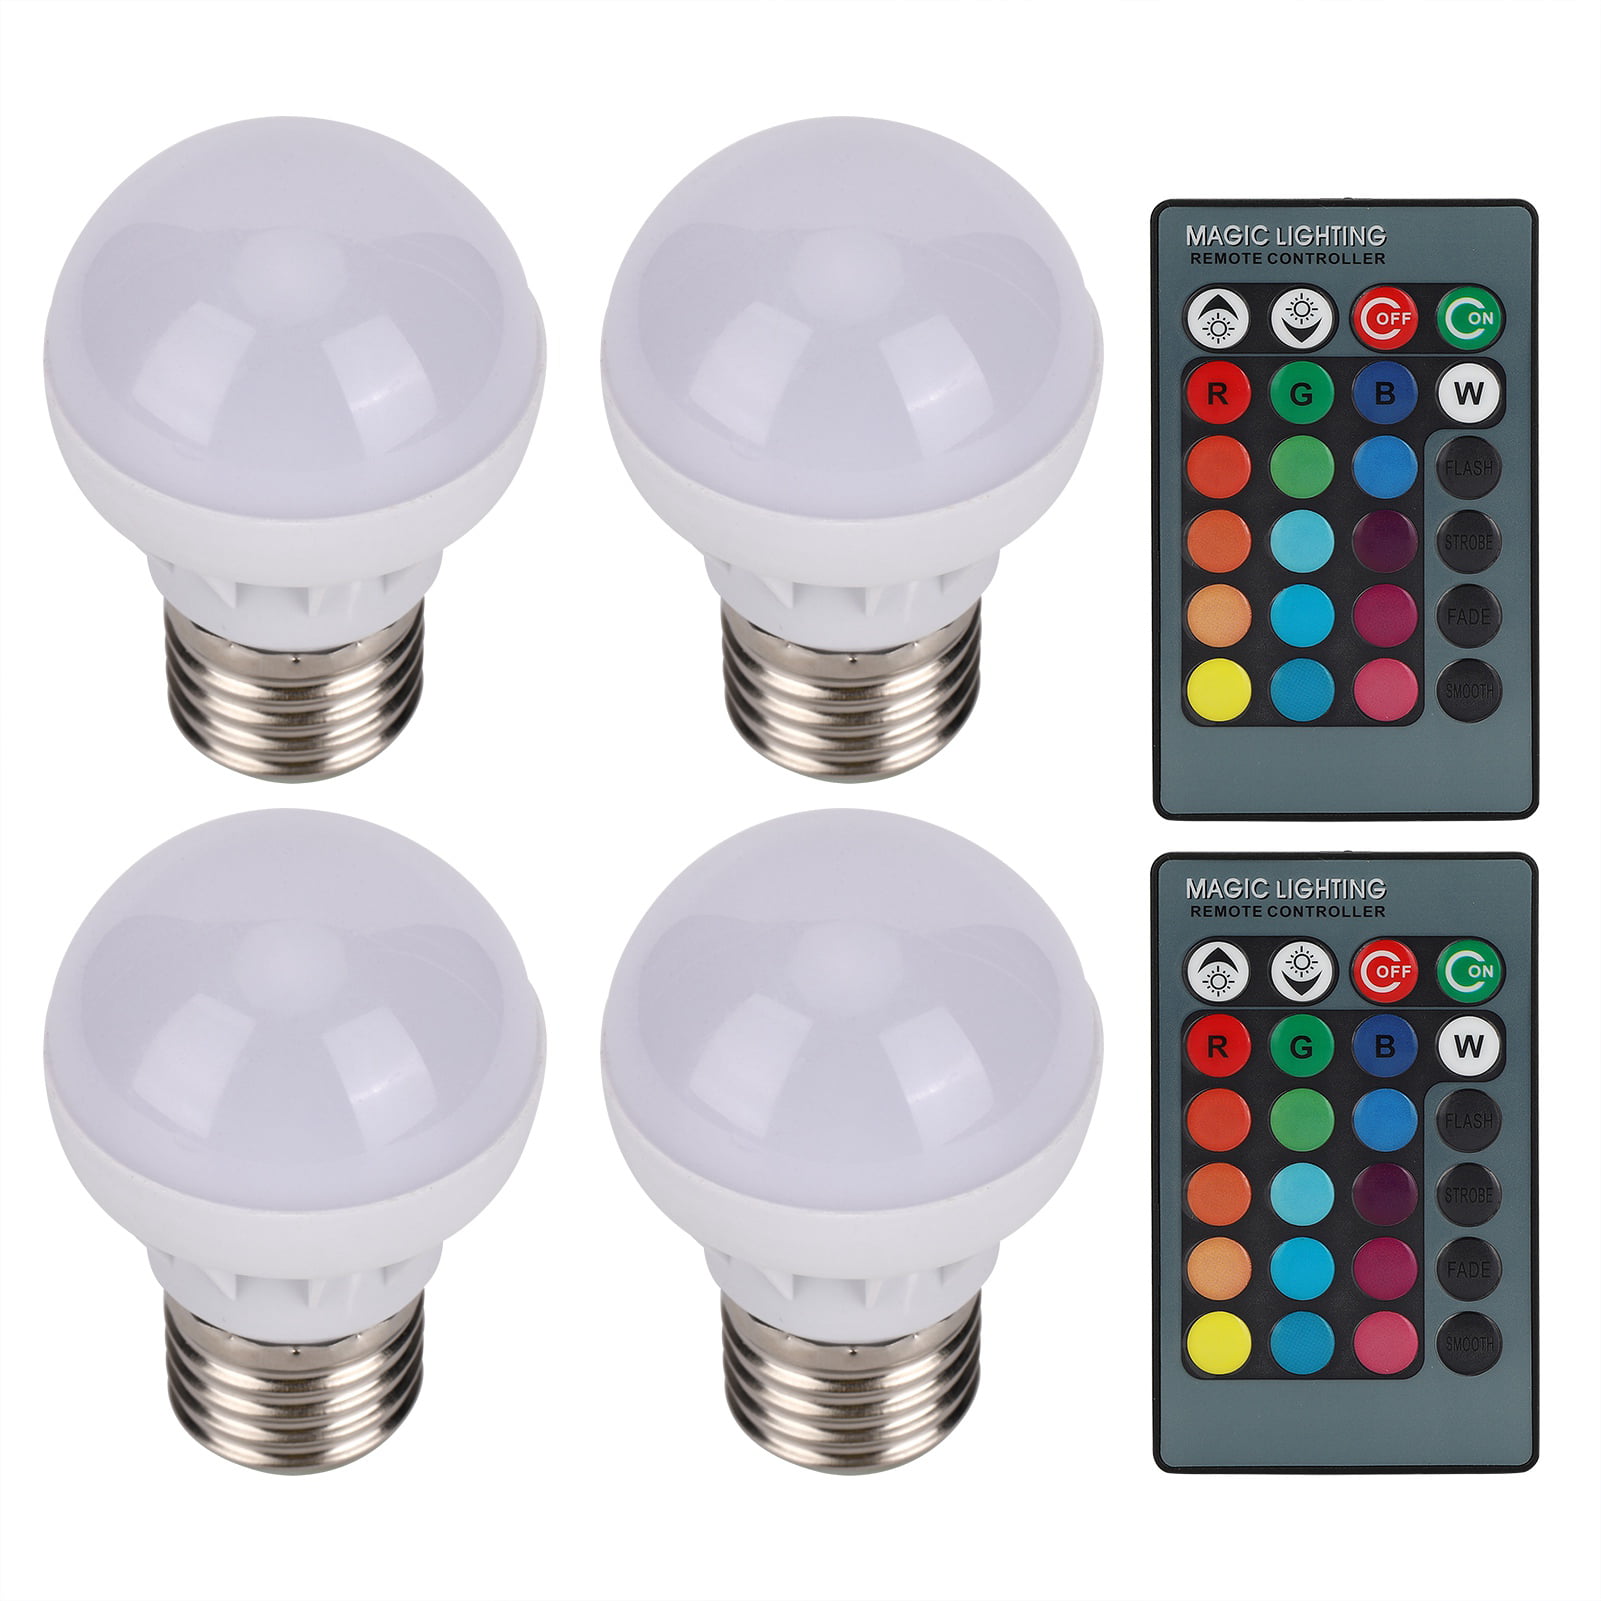 Minachting Schelden Autorisatie Light Bulbs, Color Changing Light Bulbs, High Efficiency Remote Control  Bulb, For Bedroom Bathroom Hotel Corridor - Walmart.com